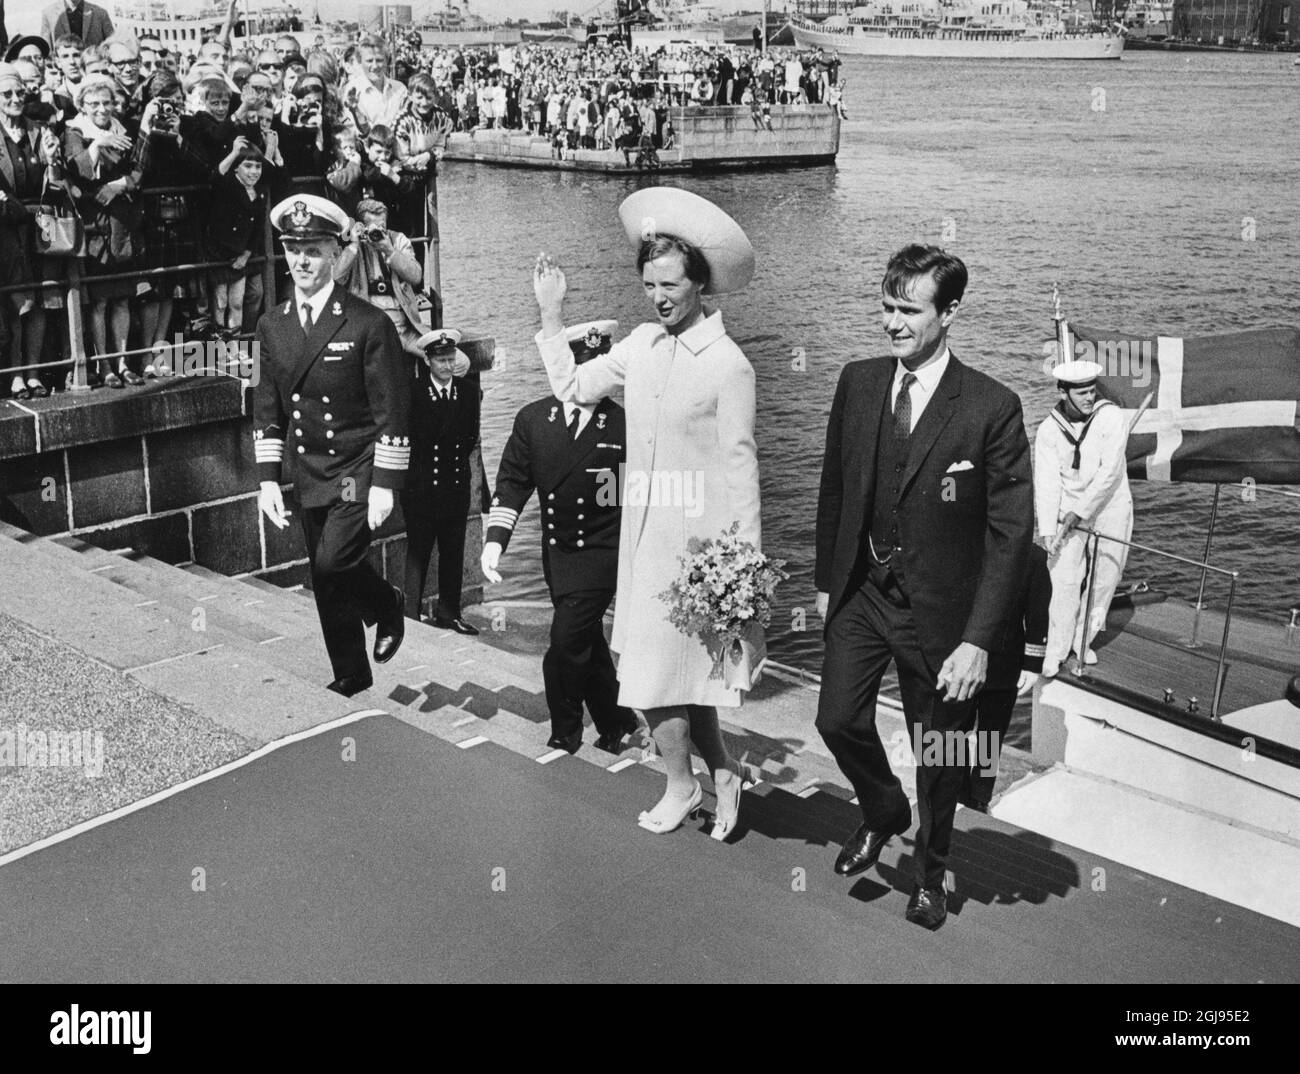 COPENHAGUE 1967-07-09 la Princesse Margret du Danemark (aujourd'hui la Reine Margrethe) est vue avec le Prince Consort Henrik après leur mariage à l'église Holmens de Copenhague Danemark, le 9 juillet 1967.7 Foto: Jan BjÃƒÂ örsell / SVD / TT / Kod: 11014 Banque D'Images